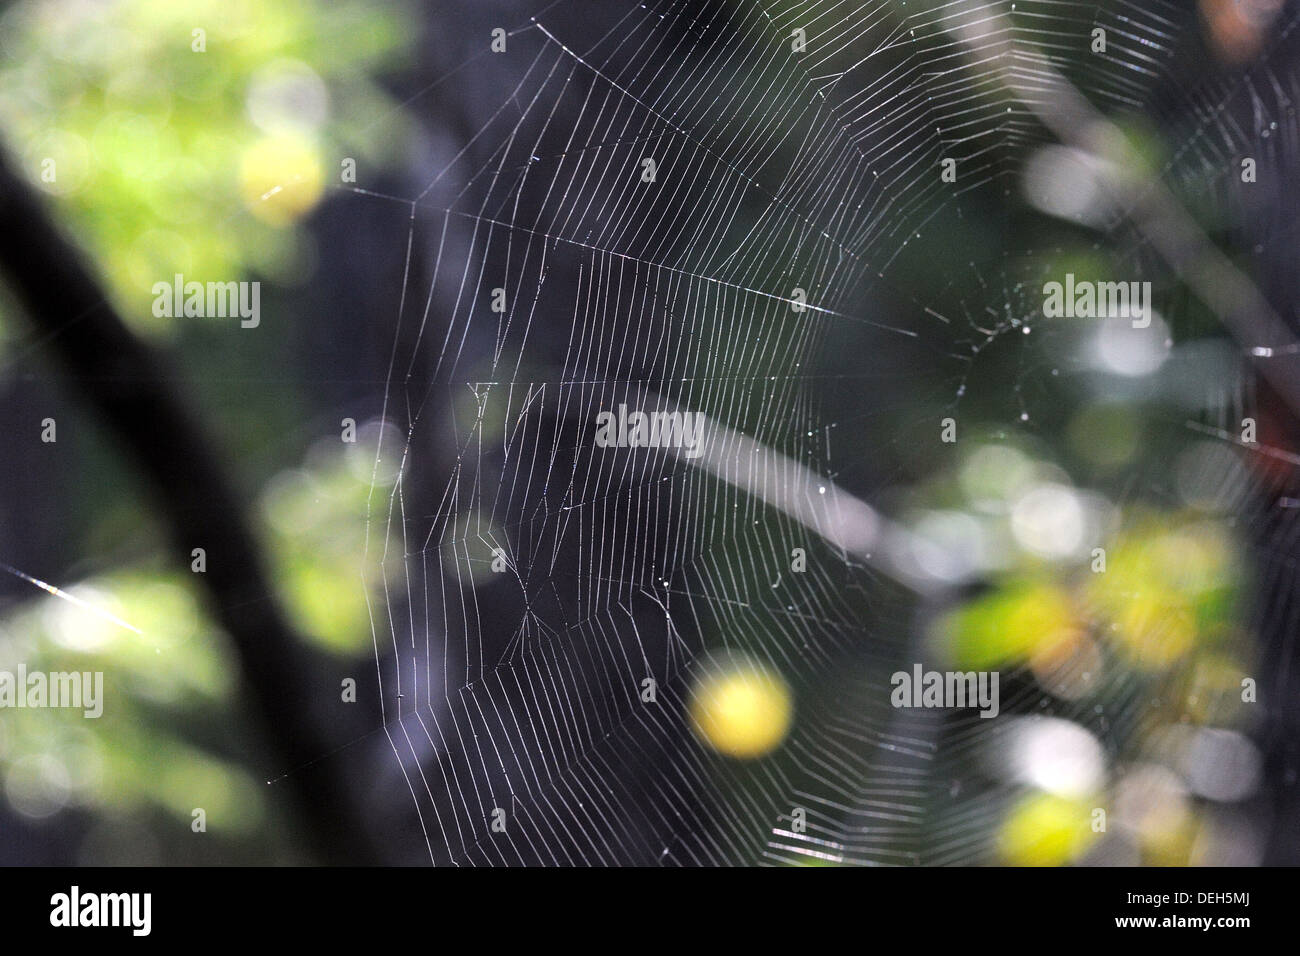 An old spiderweb of European garden spider Stock Photo